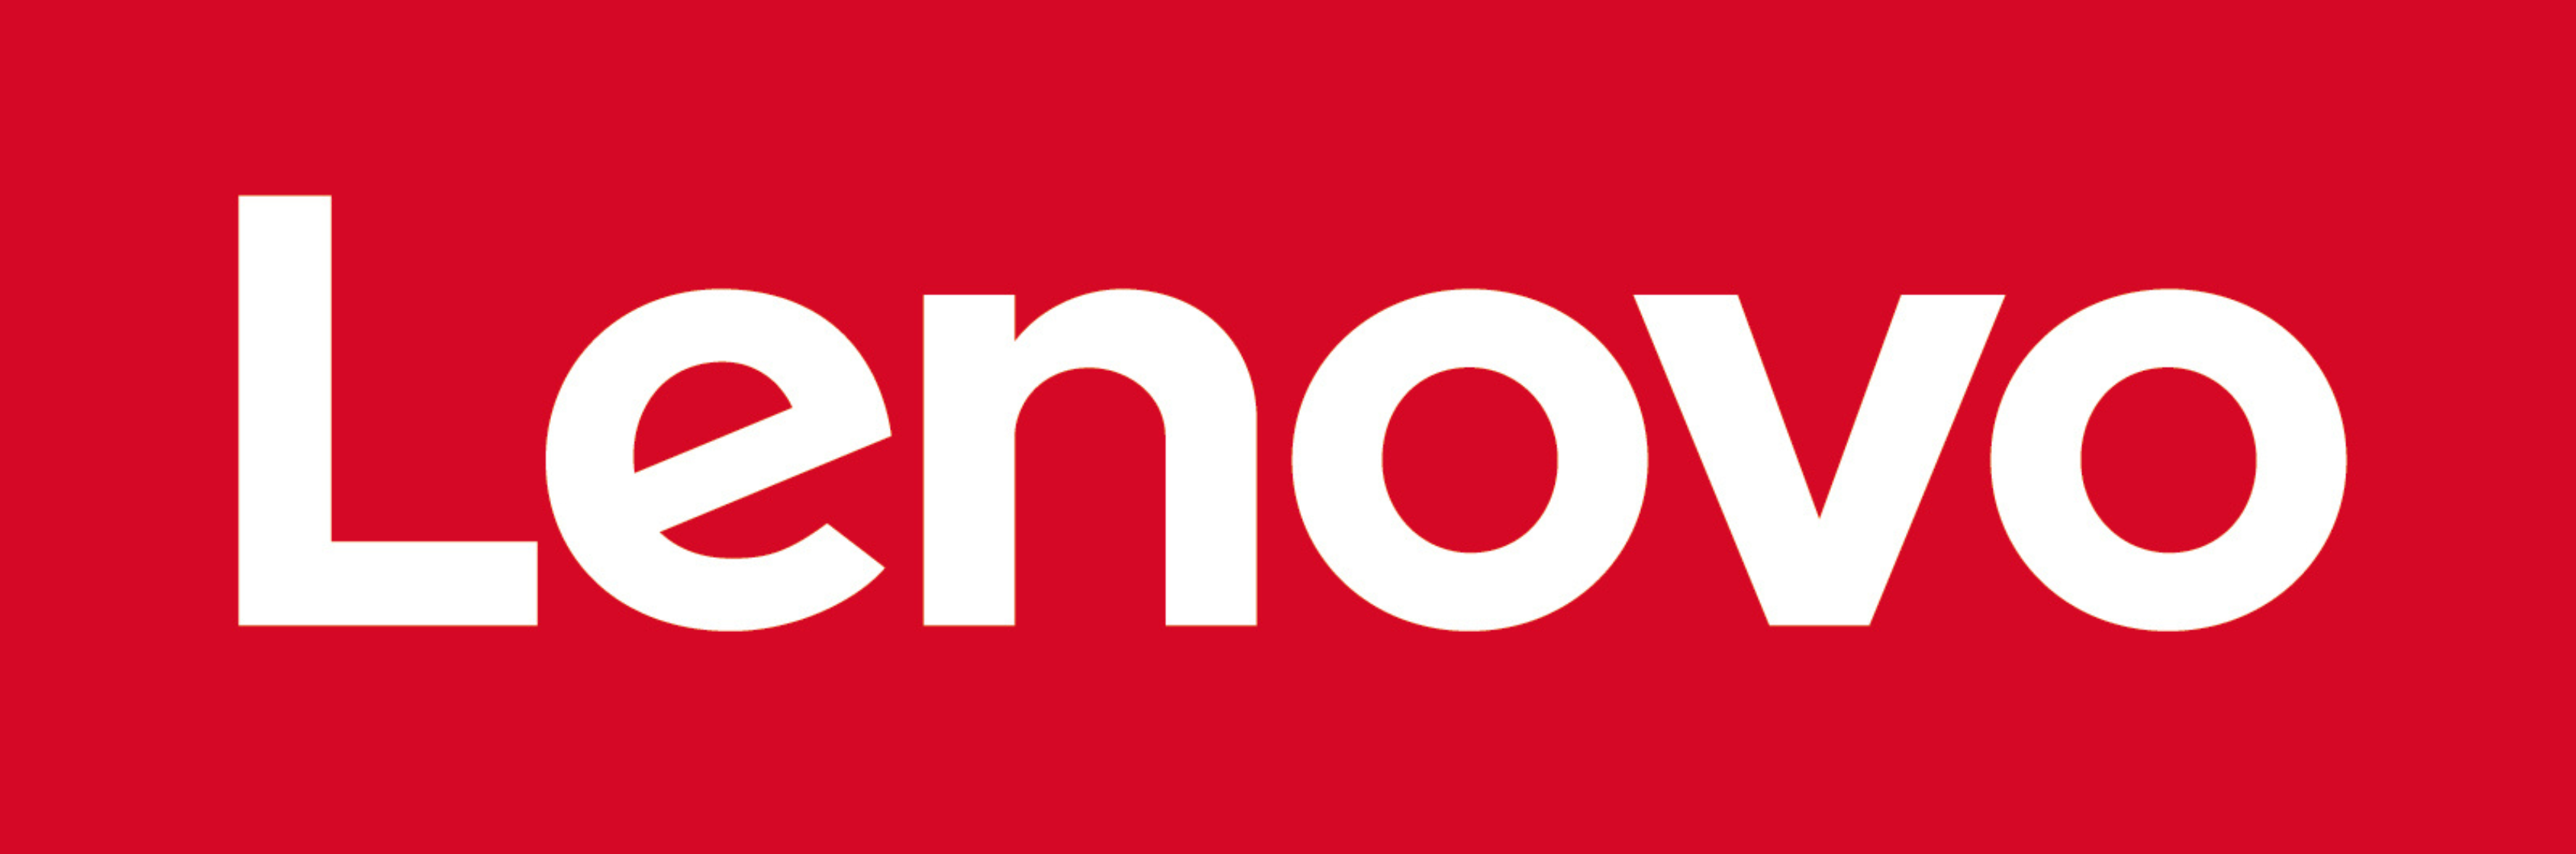 Lenovo España